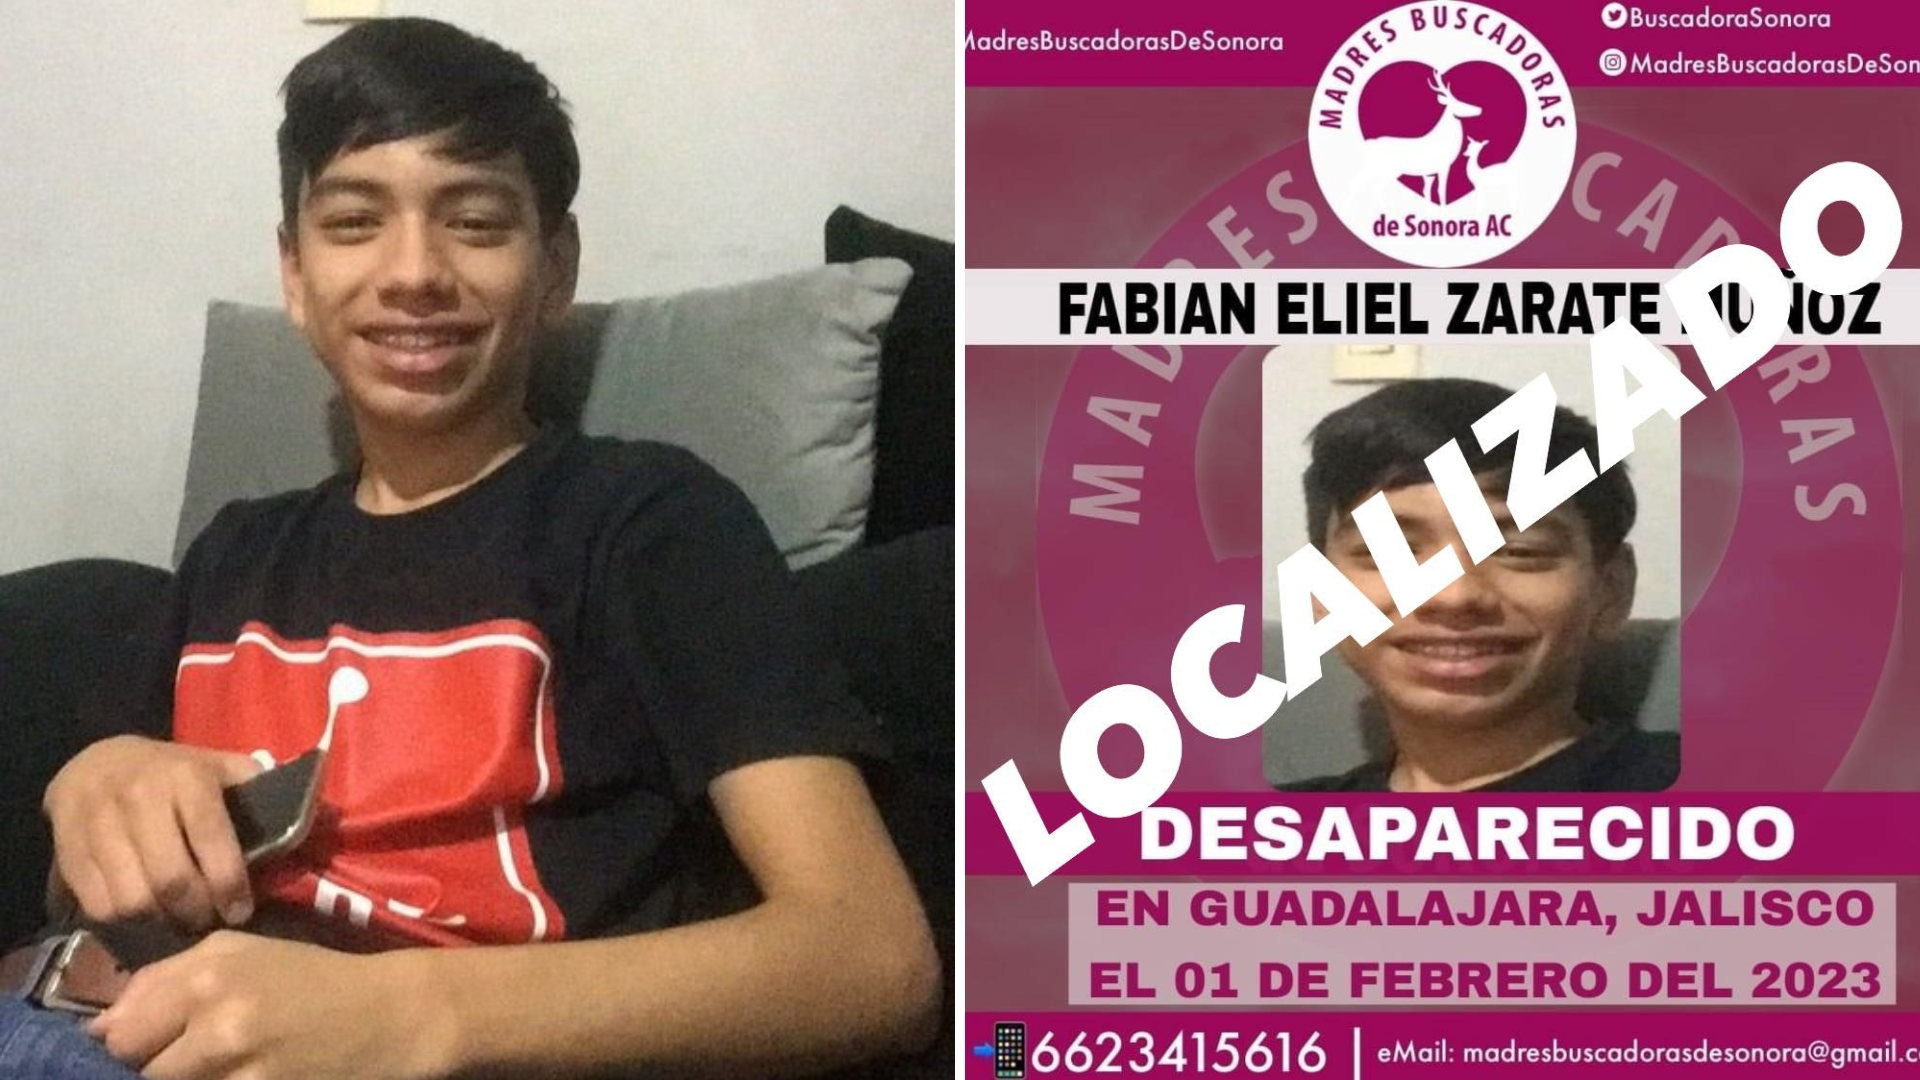 Fabian Eliel, joven reportado como desaparecido y hermano de una buscadora, fue localizado en Jalisco